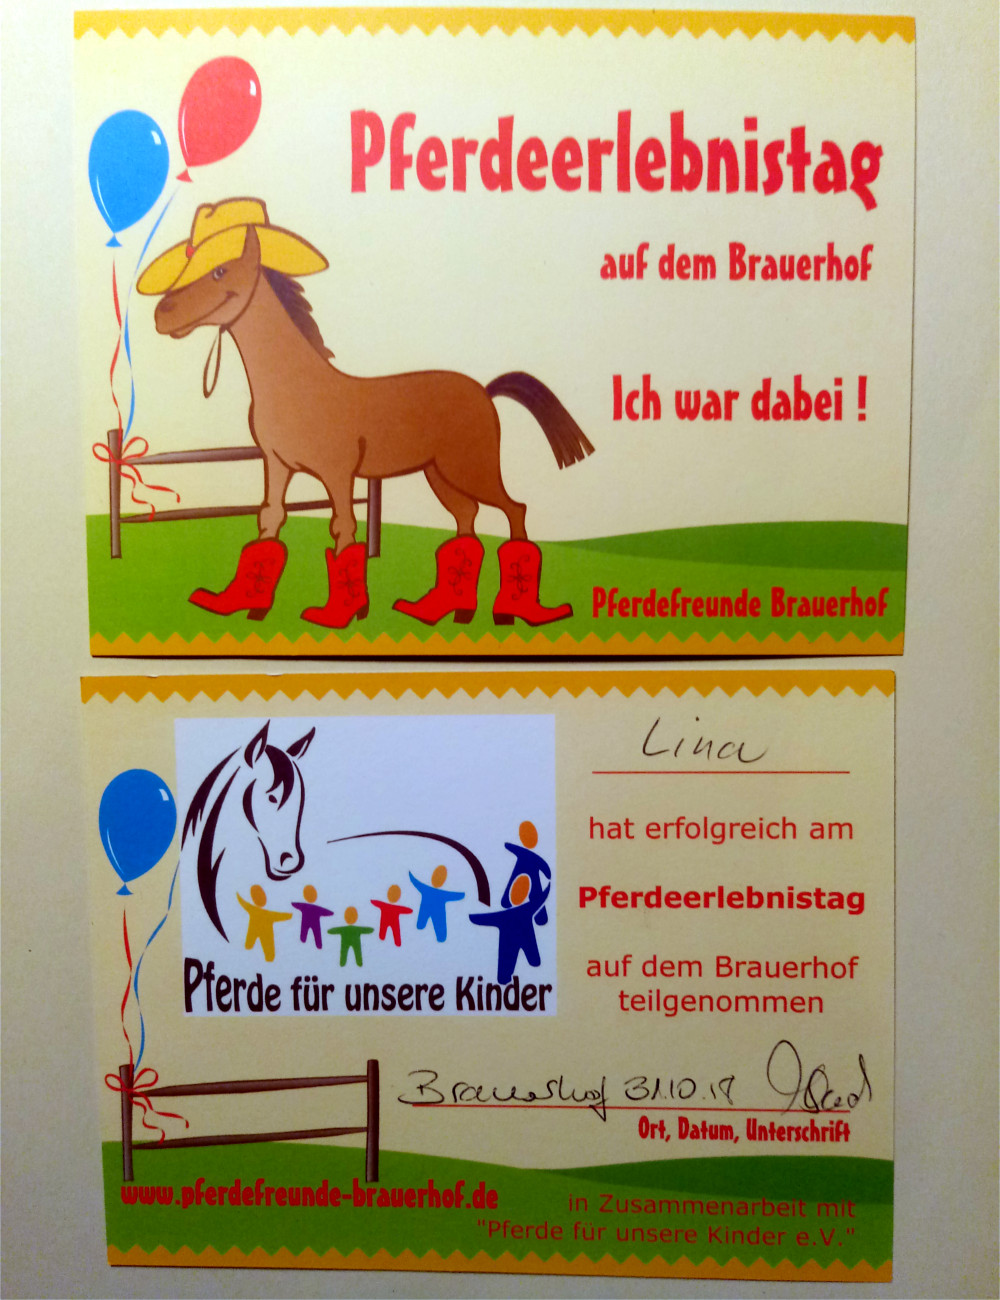 Pferde für unsere Kinder e.V. Pferdeerelbnistag Pferdefreunde Brauerhof (II)